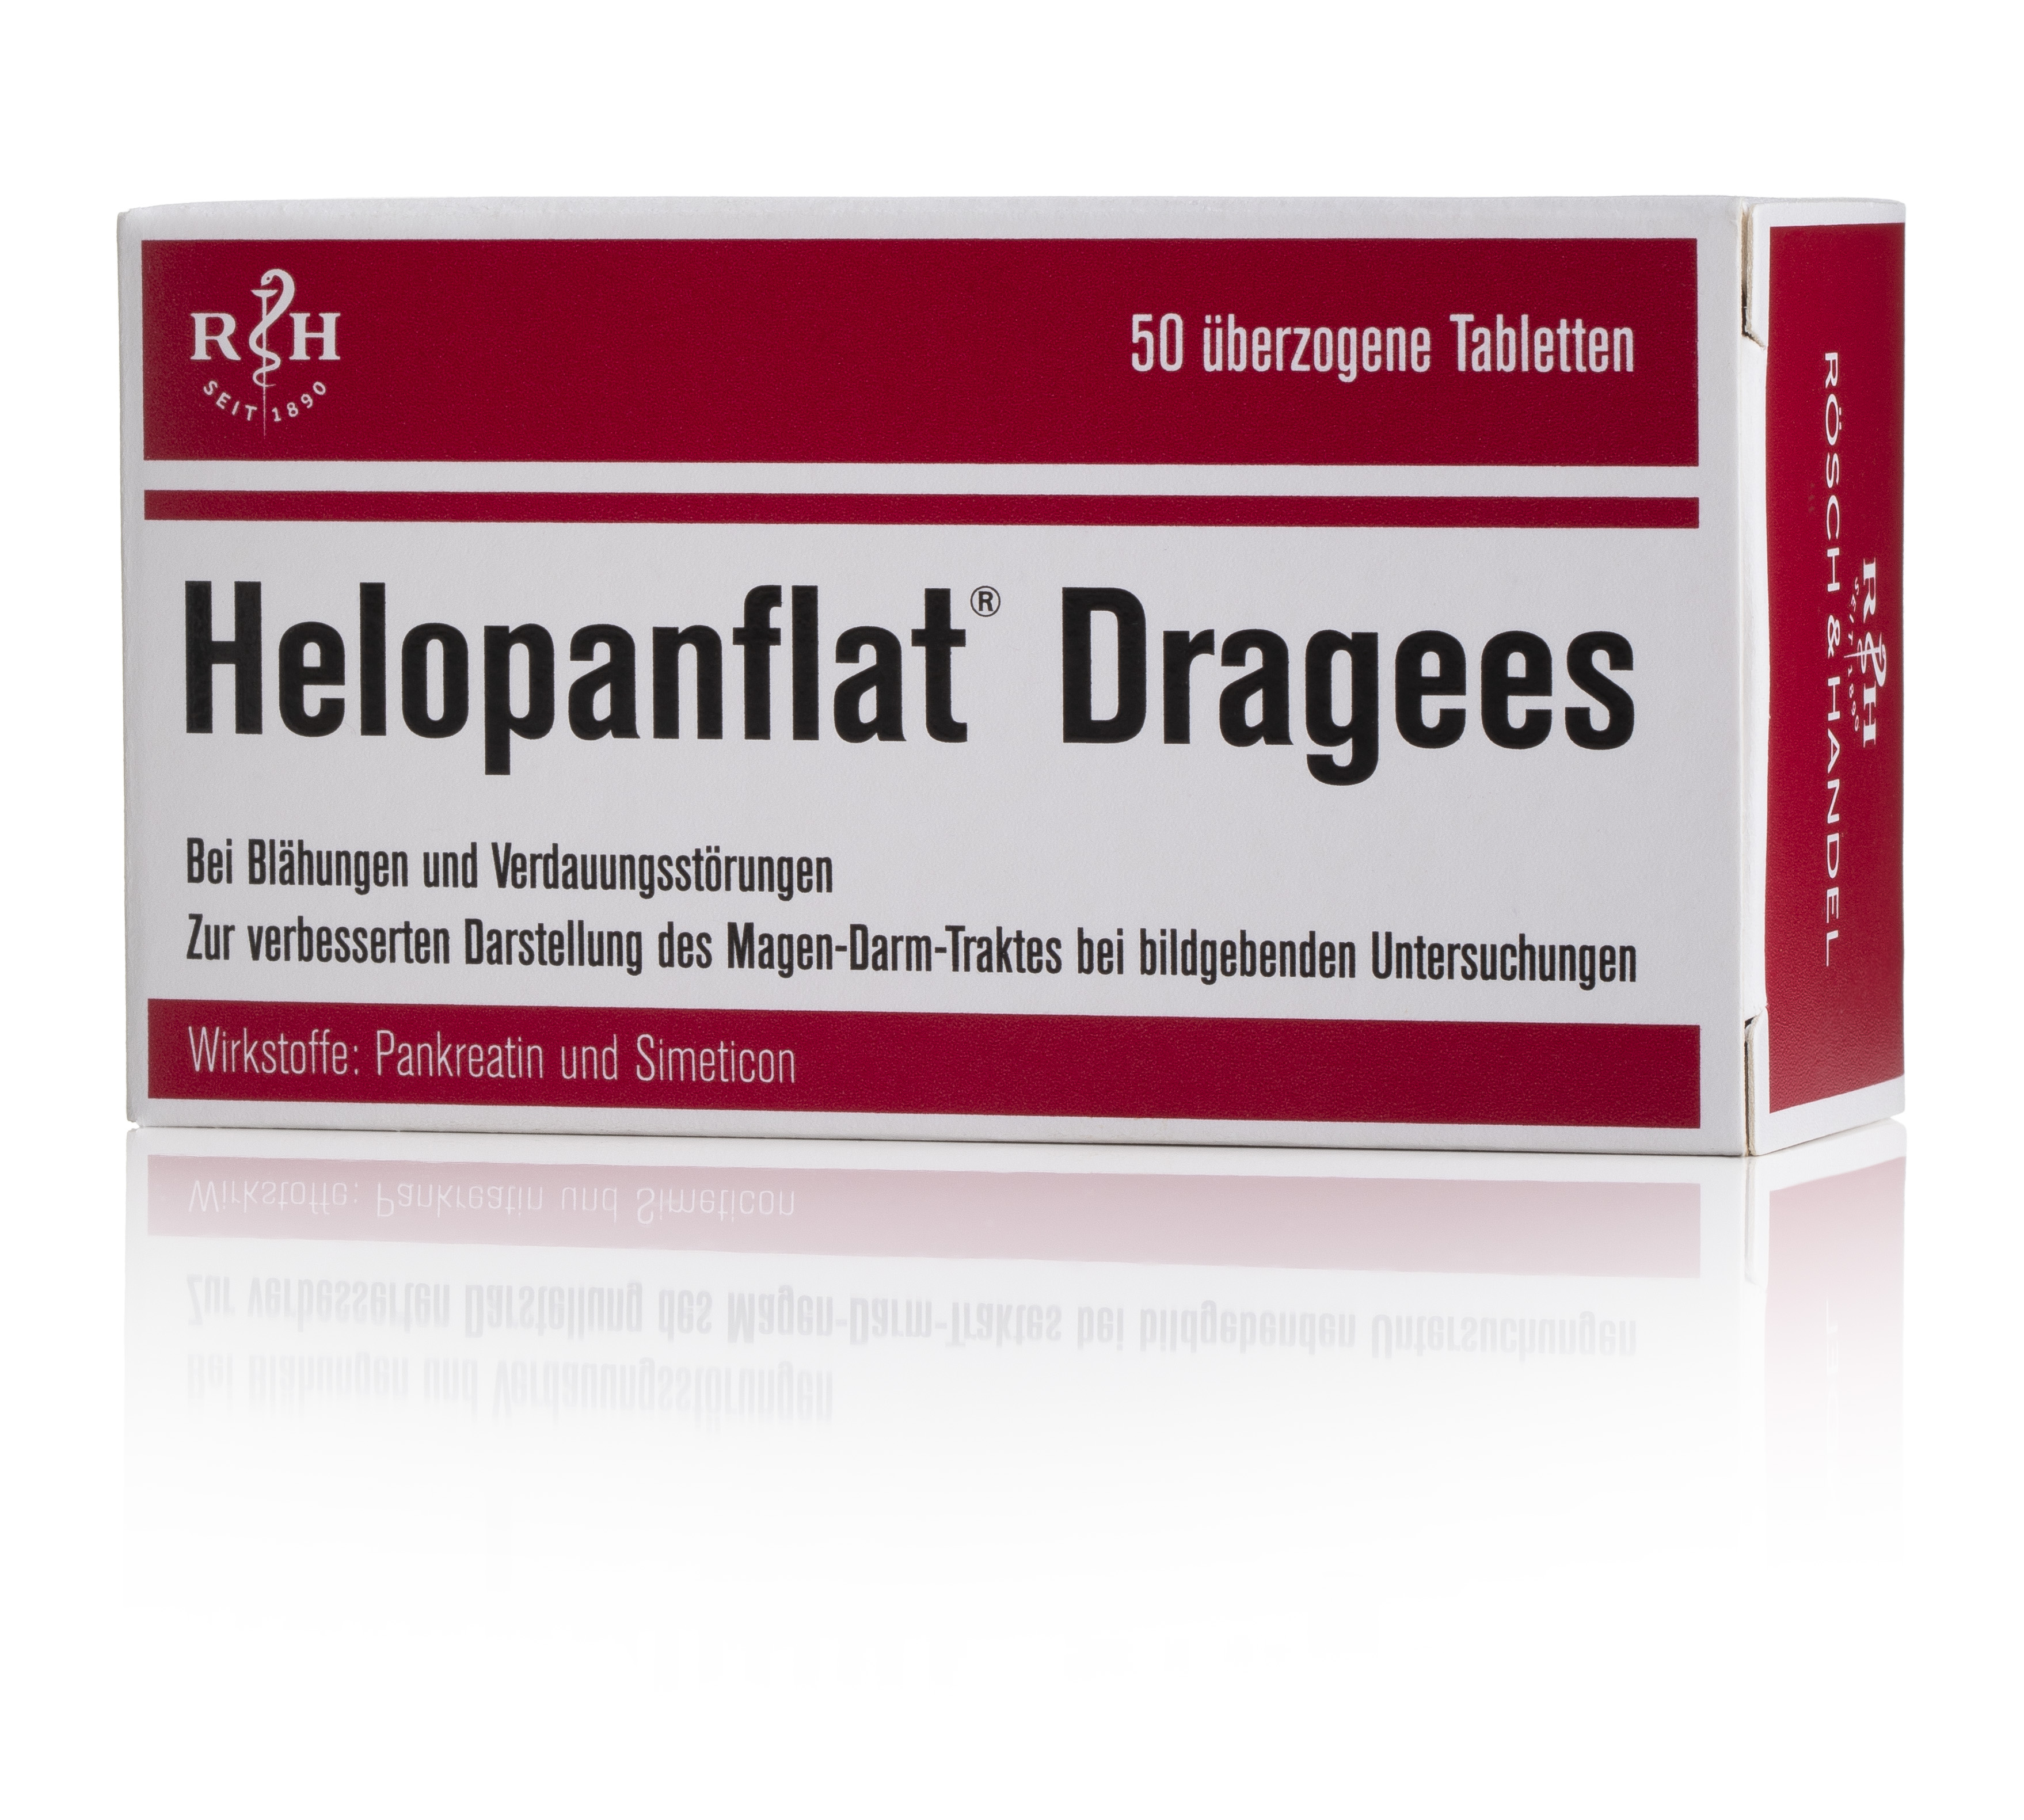 Helopanflat - Dragees